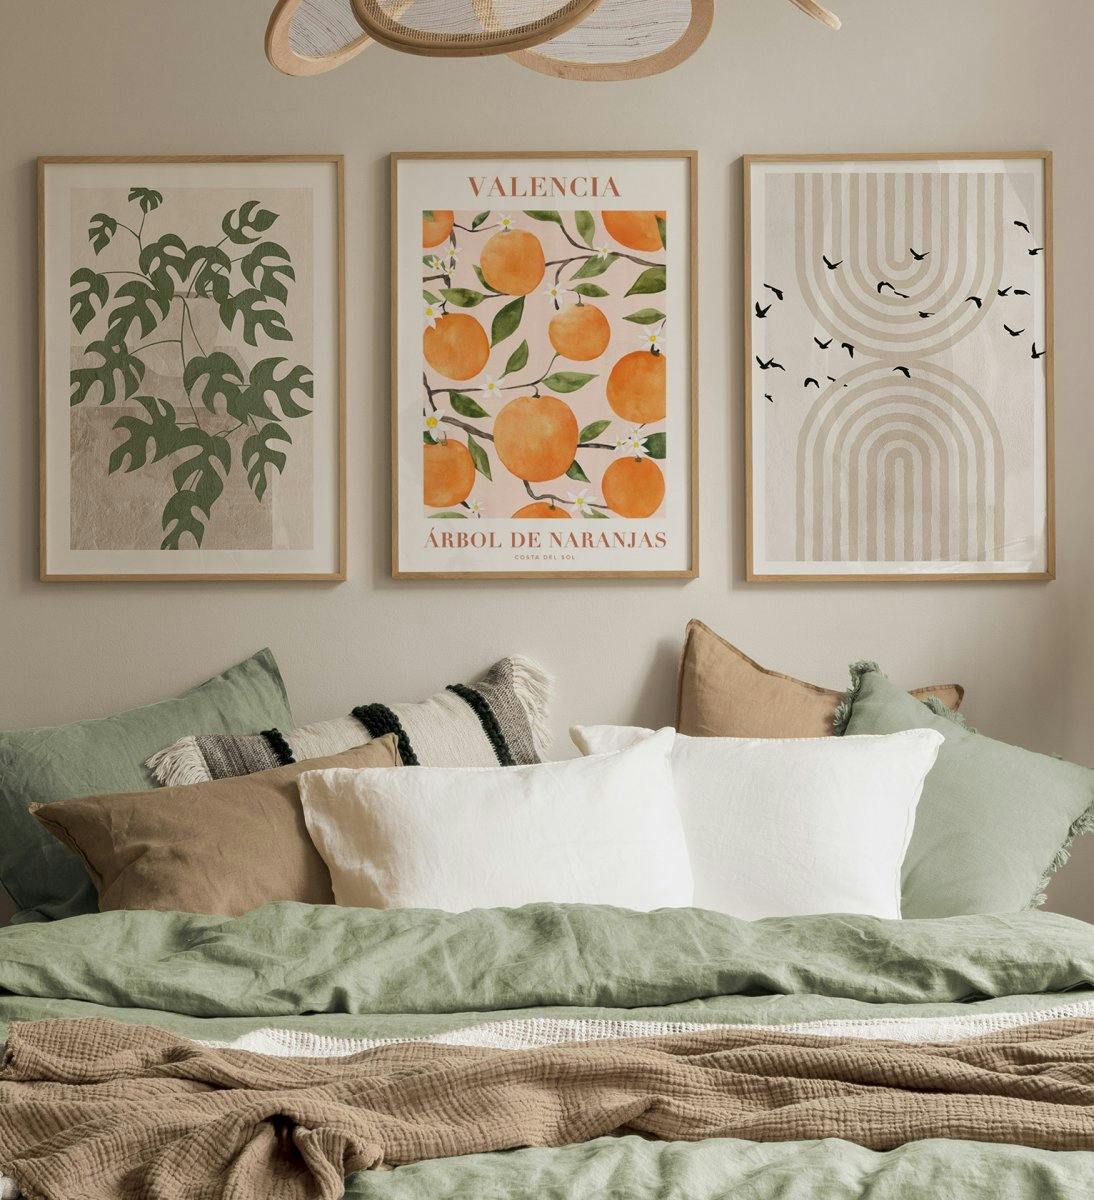 Illustrationstavelvägg med inslag av grafiska, frukt- och naturposters med ekramar till sovrummet